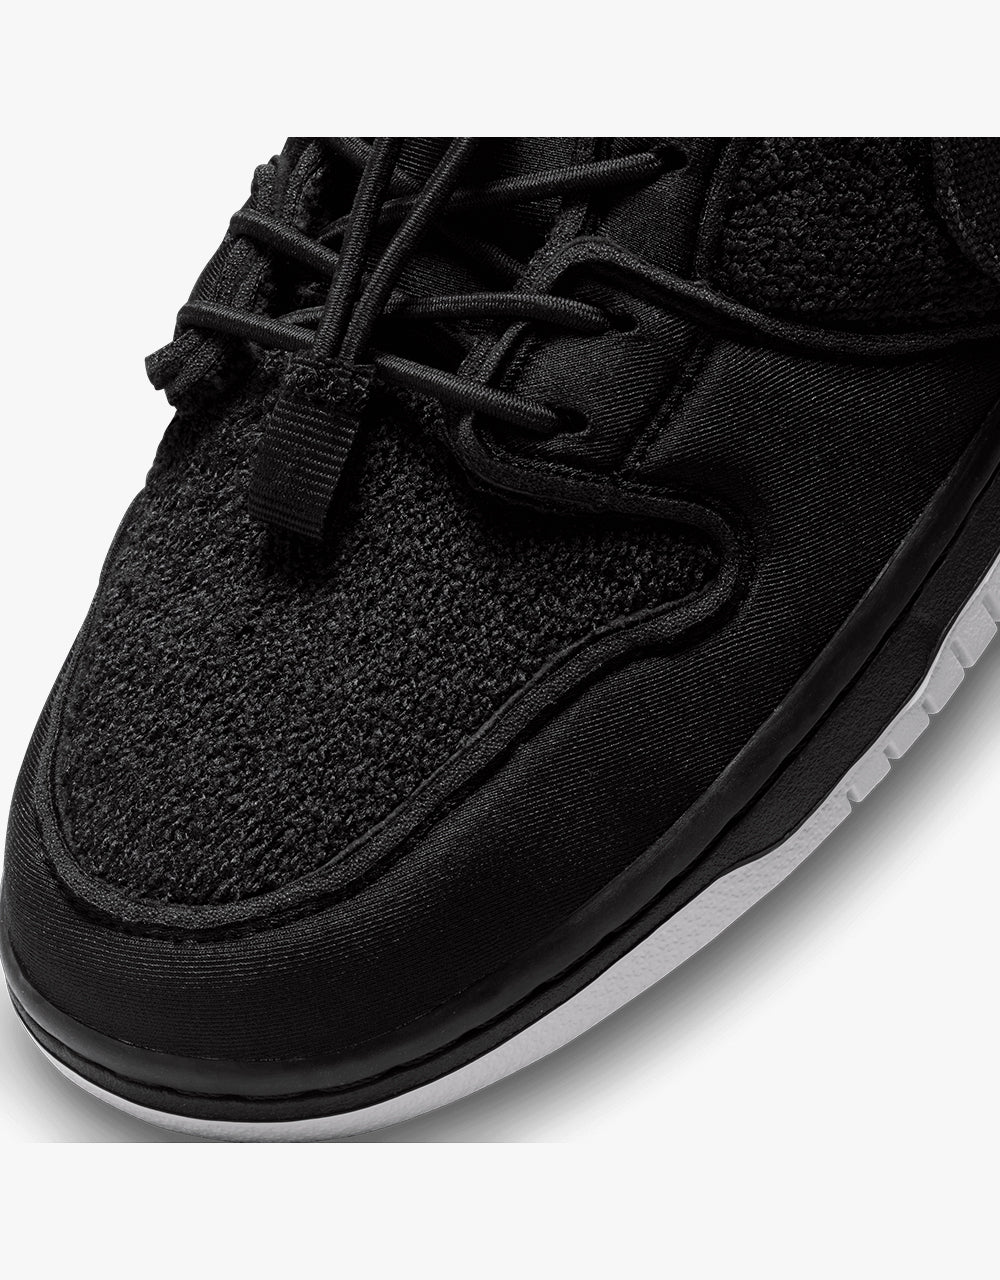 Nike SB 'Gnarhunters' Dunk Low Pro QS - Black/Black-White